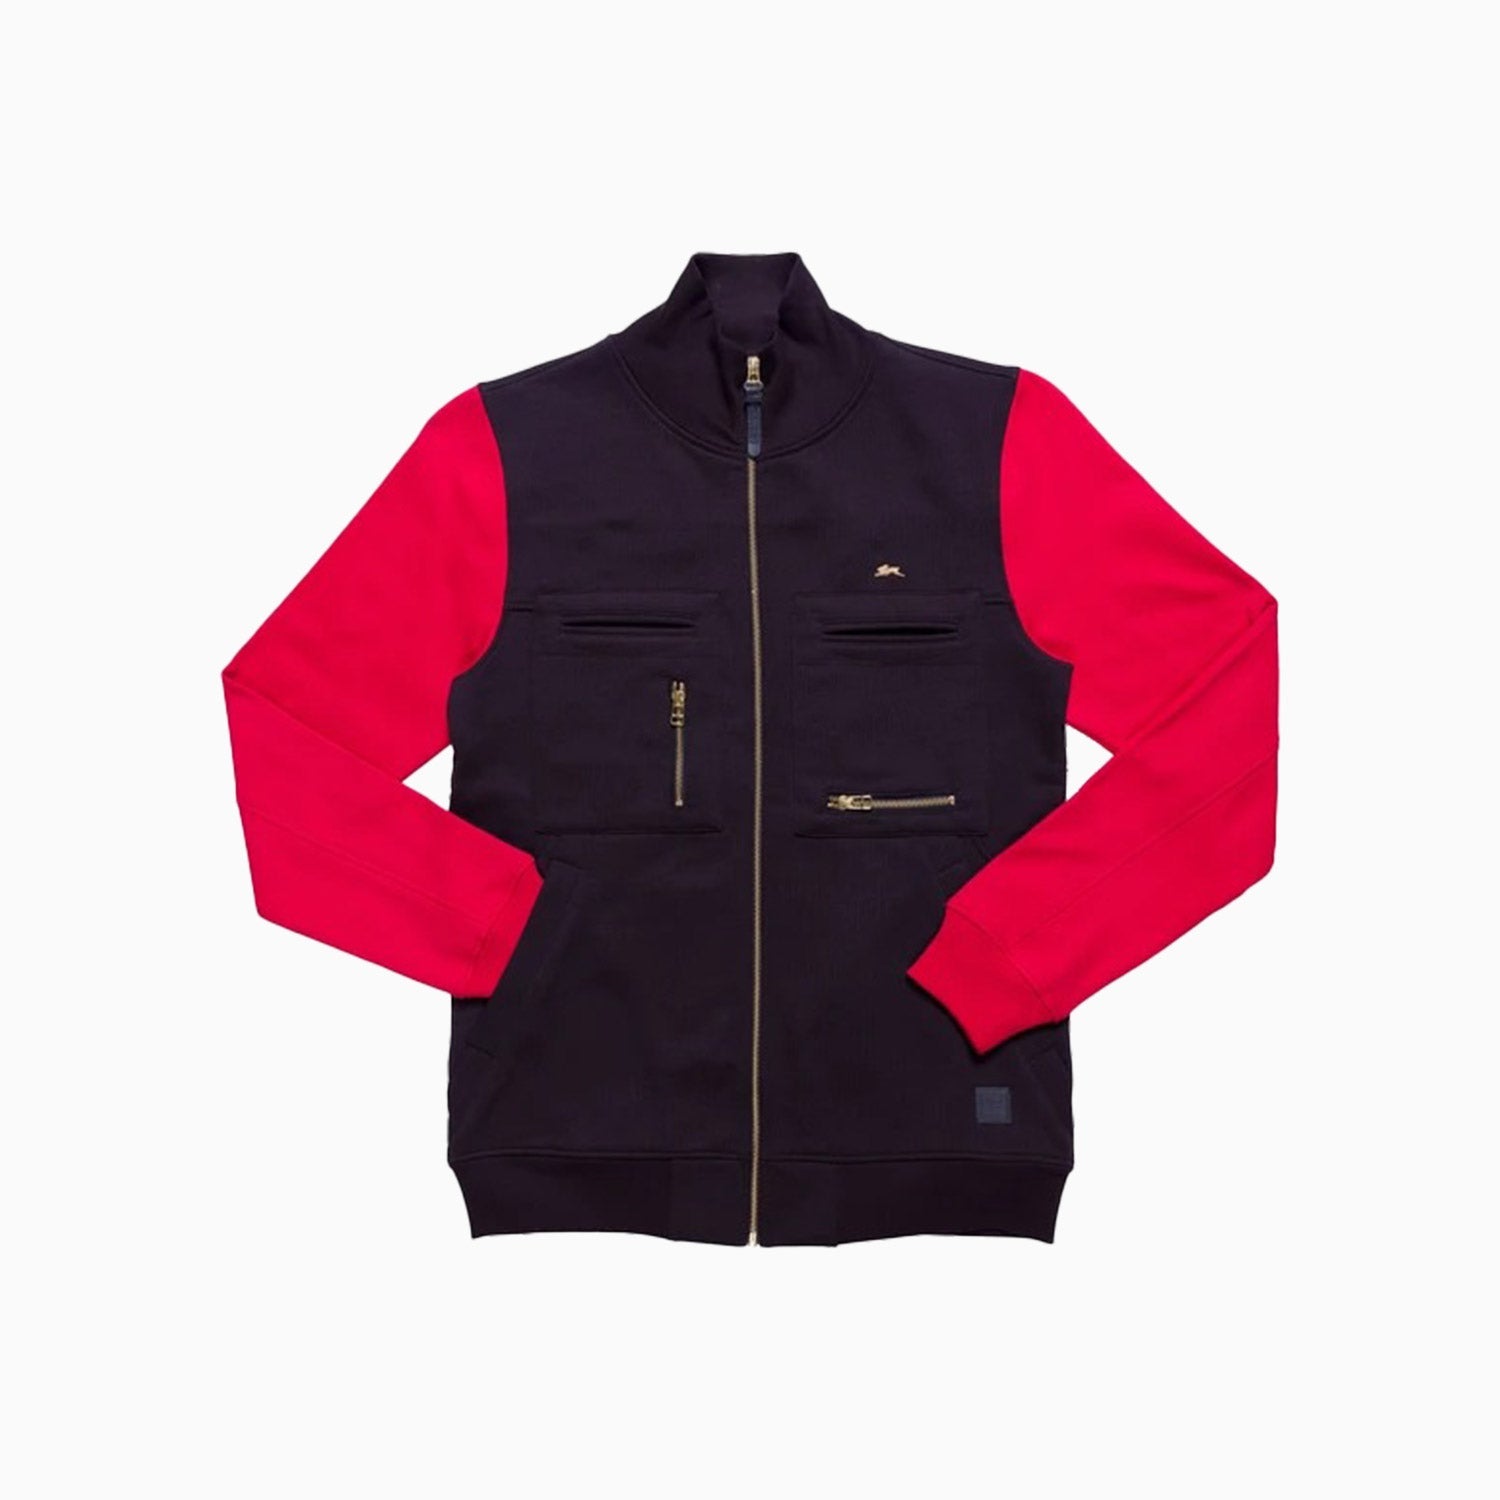 a-tiziano-mens-meyer-full-zip-jacket-14atc0001